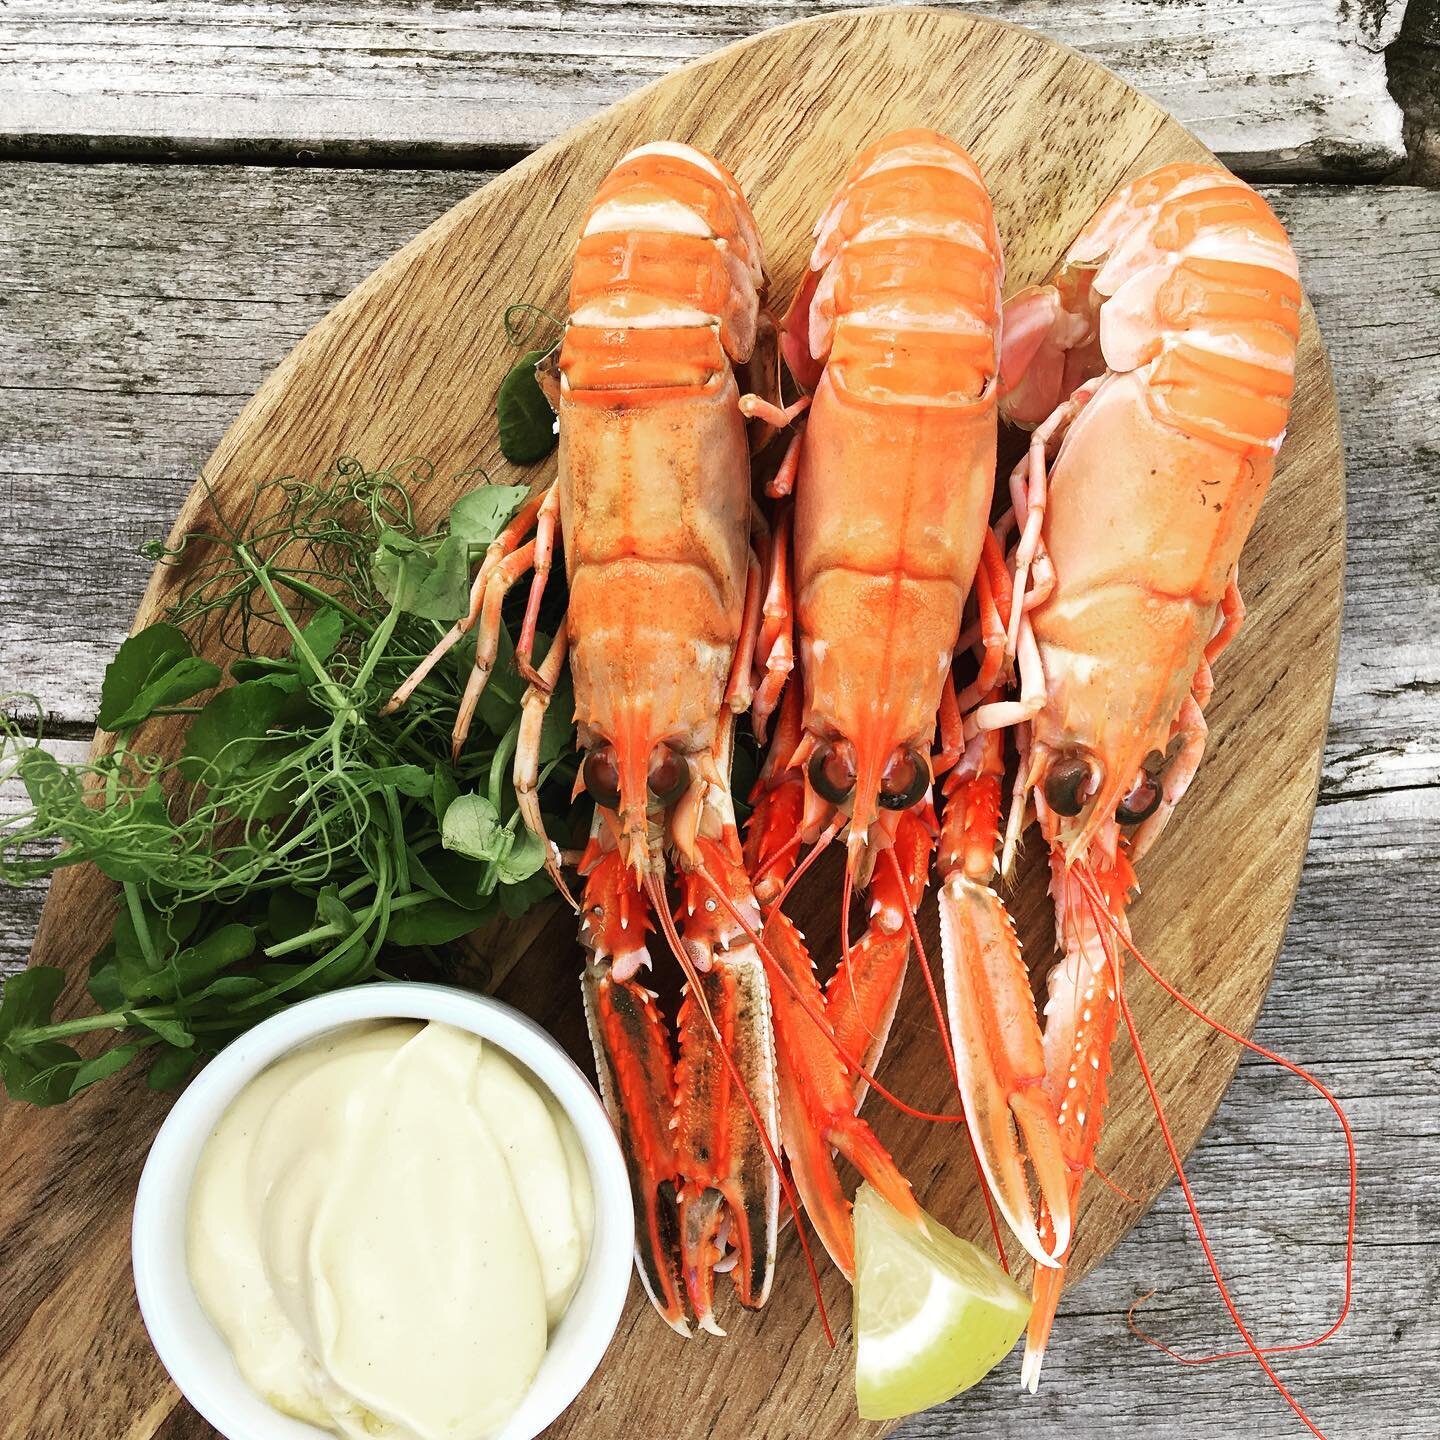 West coast langoustines &amp; garlic mayo. Amazing produce + served simply = the way it should be! #cheflife #kilchrenaninn #westcoast #goodfood